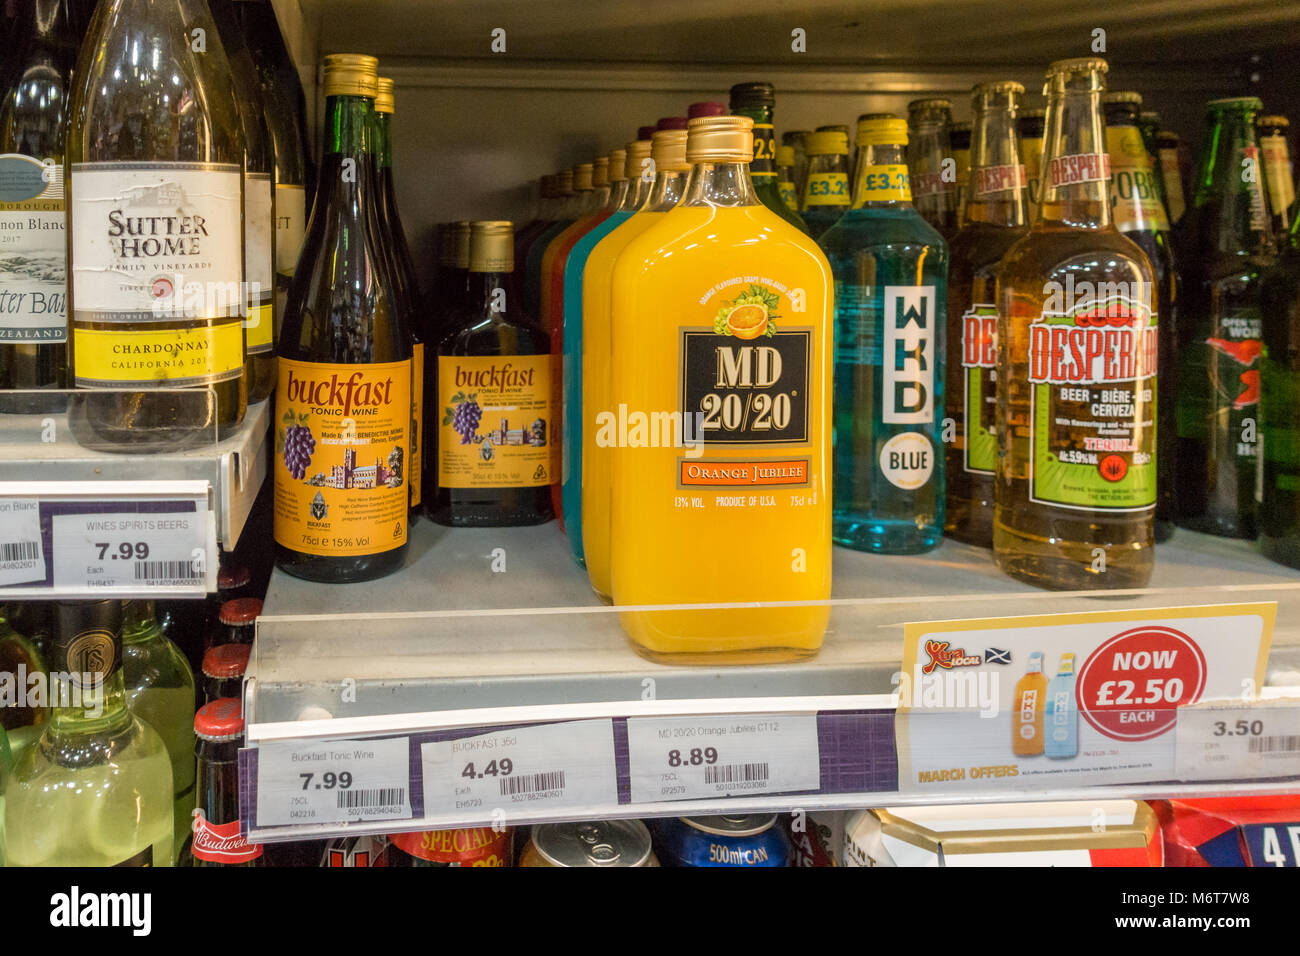 El alcohol, incluyendo botellas de Buckfast, MD 50/50 y WKD en venta en licencia en Glasgow, Escocia, Reino Unido Foto de stock